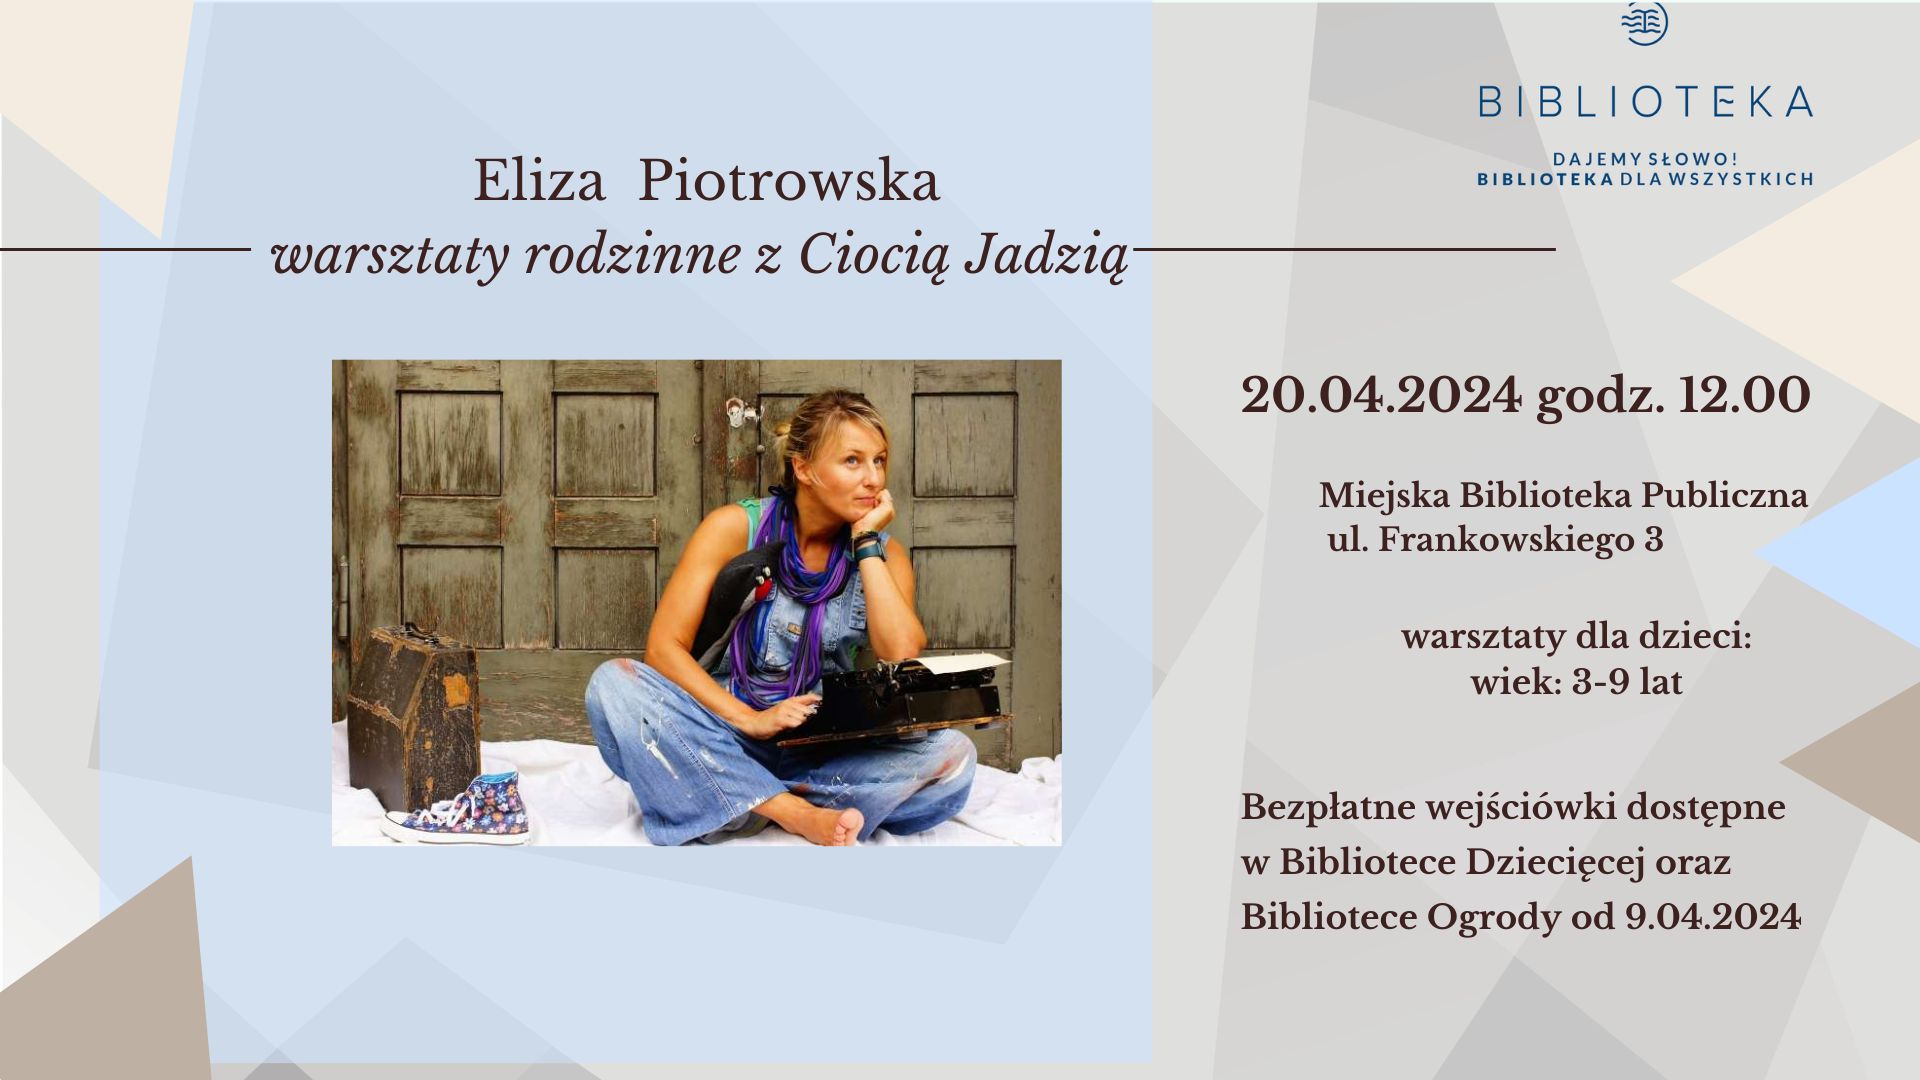 Eliza Piotrowska, autorka znanej serii książek "Ciocia Jadzia"